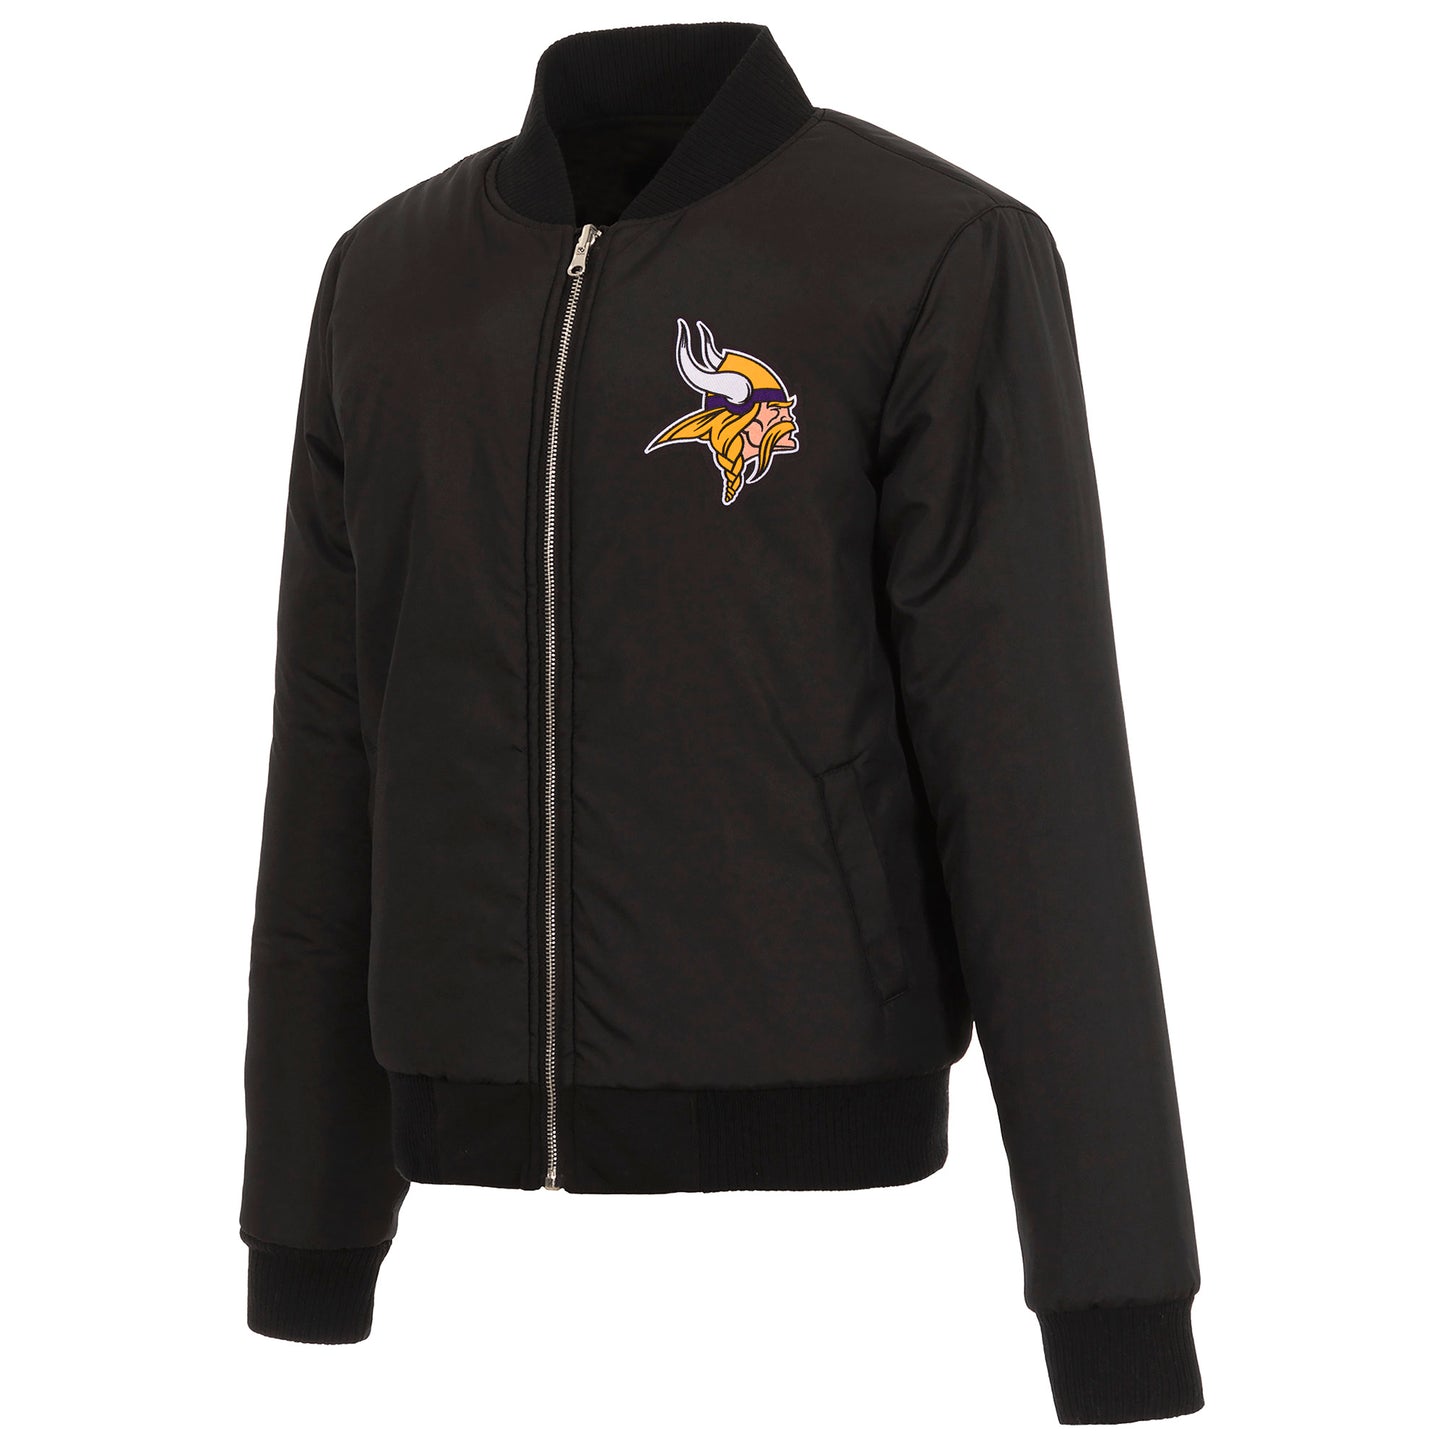 Minnesota Vikings Ladies Reversible Fleece Jacket